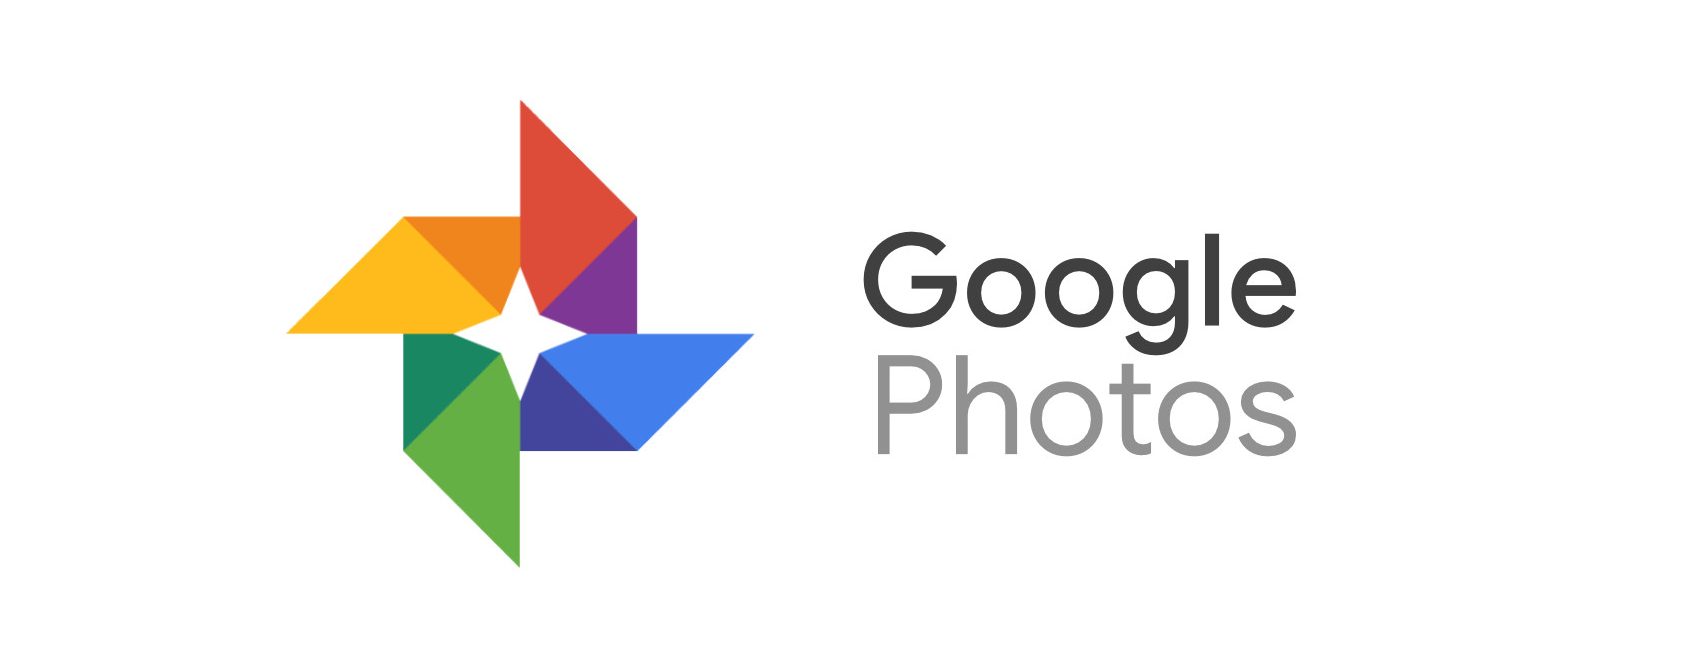 Google เปิดตัวบริการใหม่ที่คัดสรรและพิมพ์จากแอป Google Photos ของคุณ